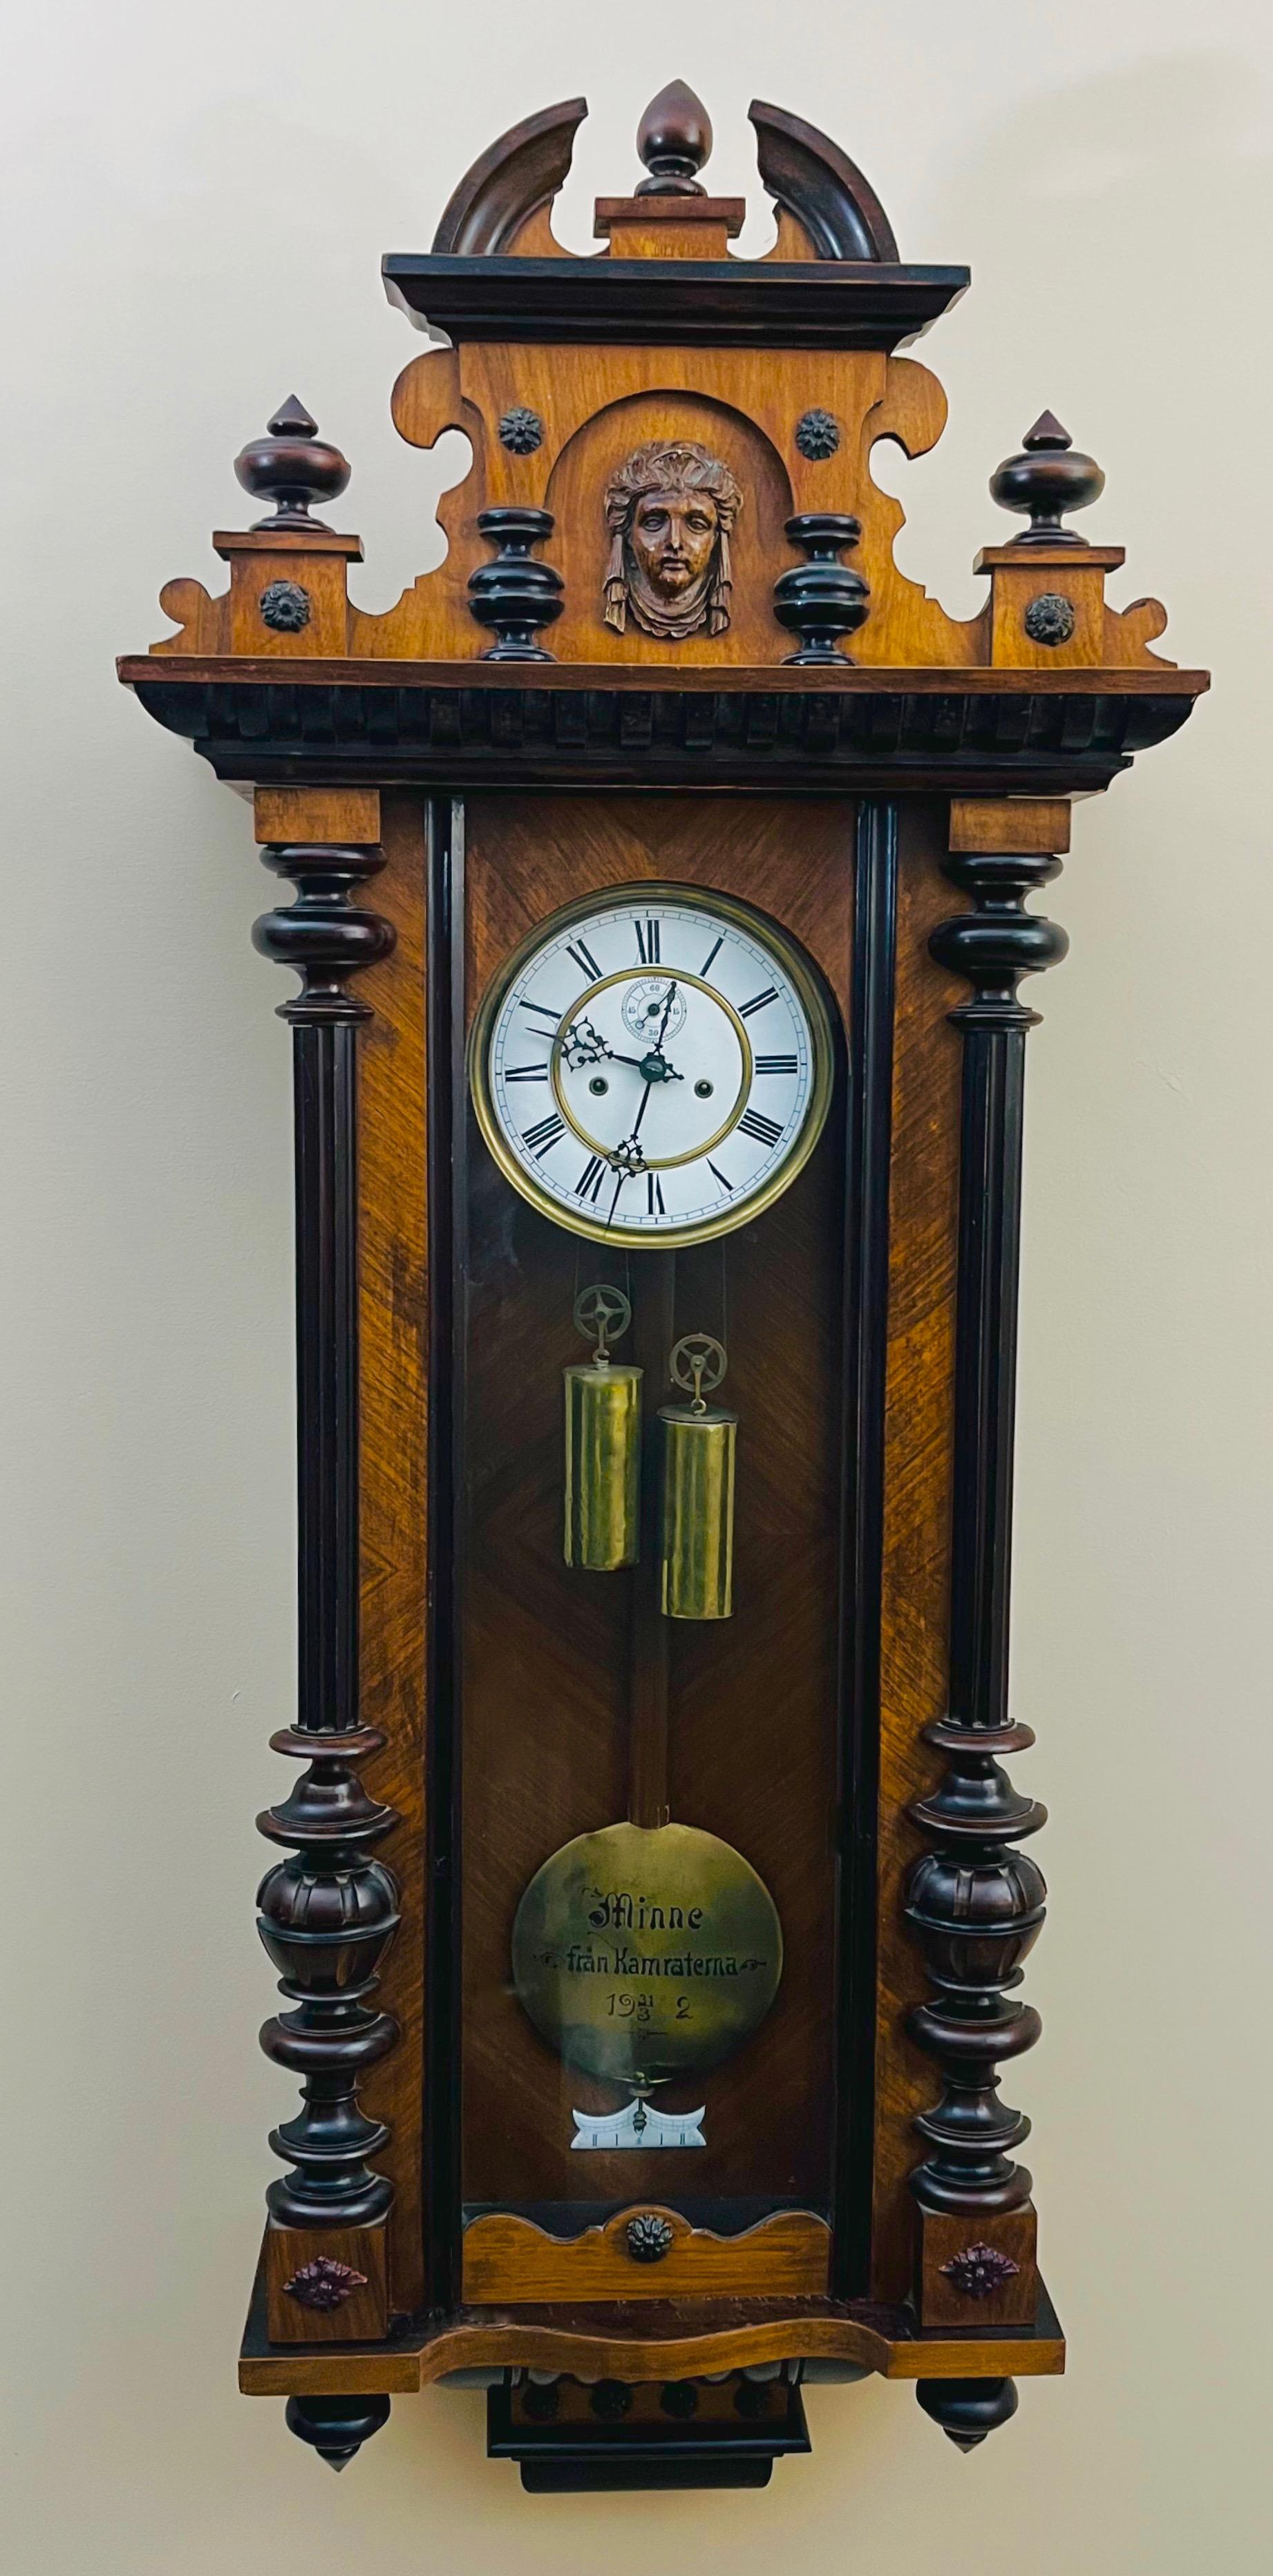 Dekoracyjny zegar wiszący wiedeński